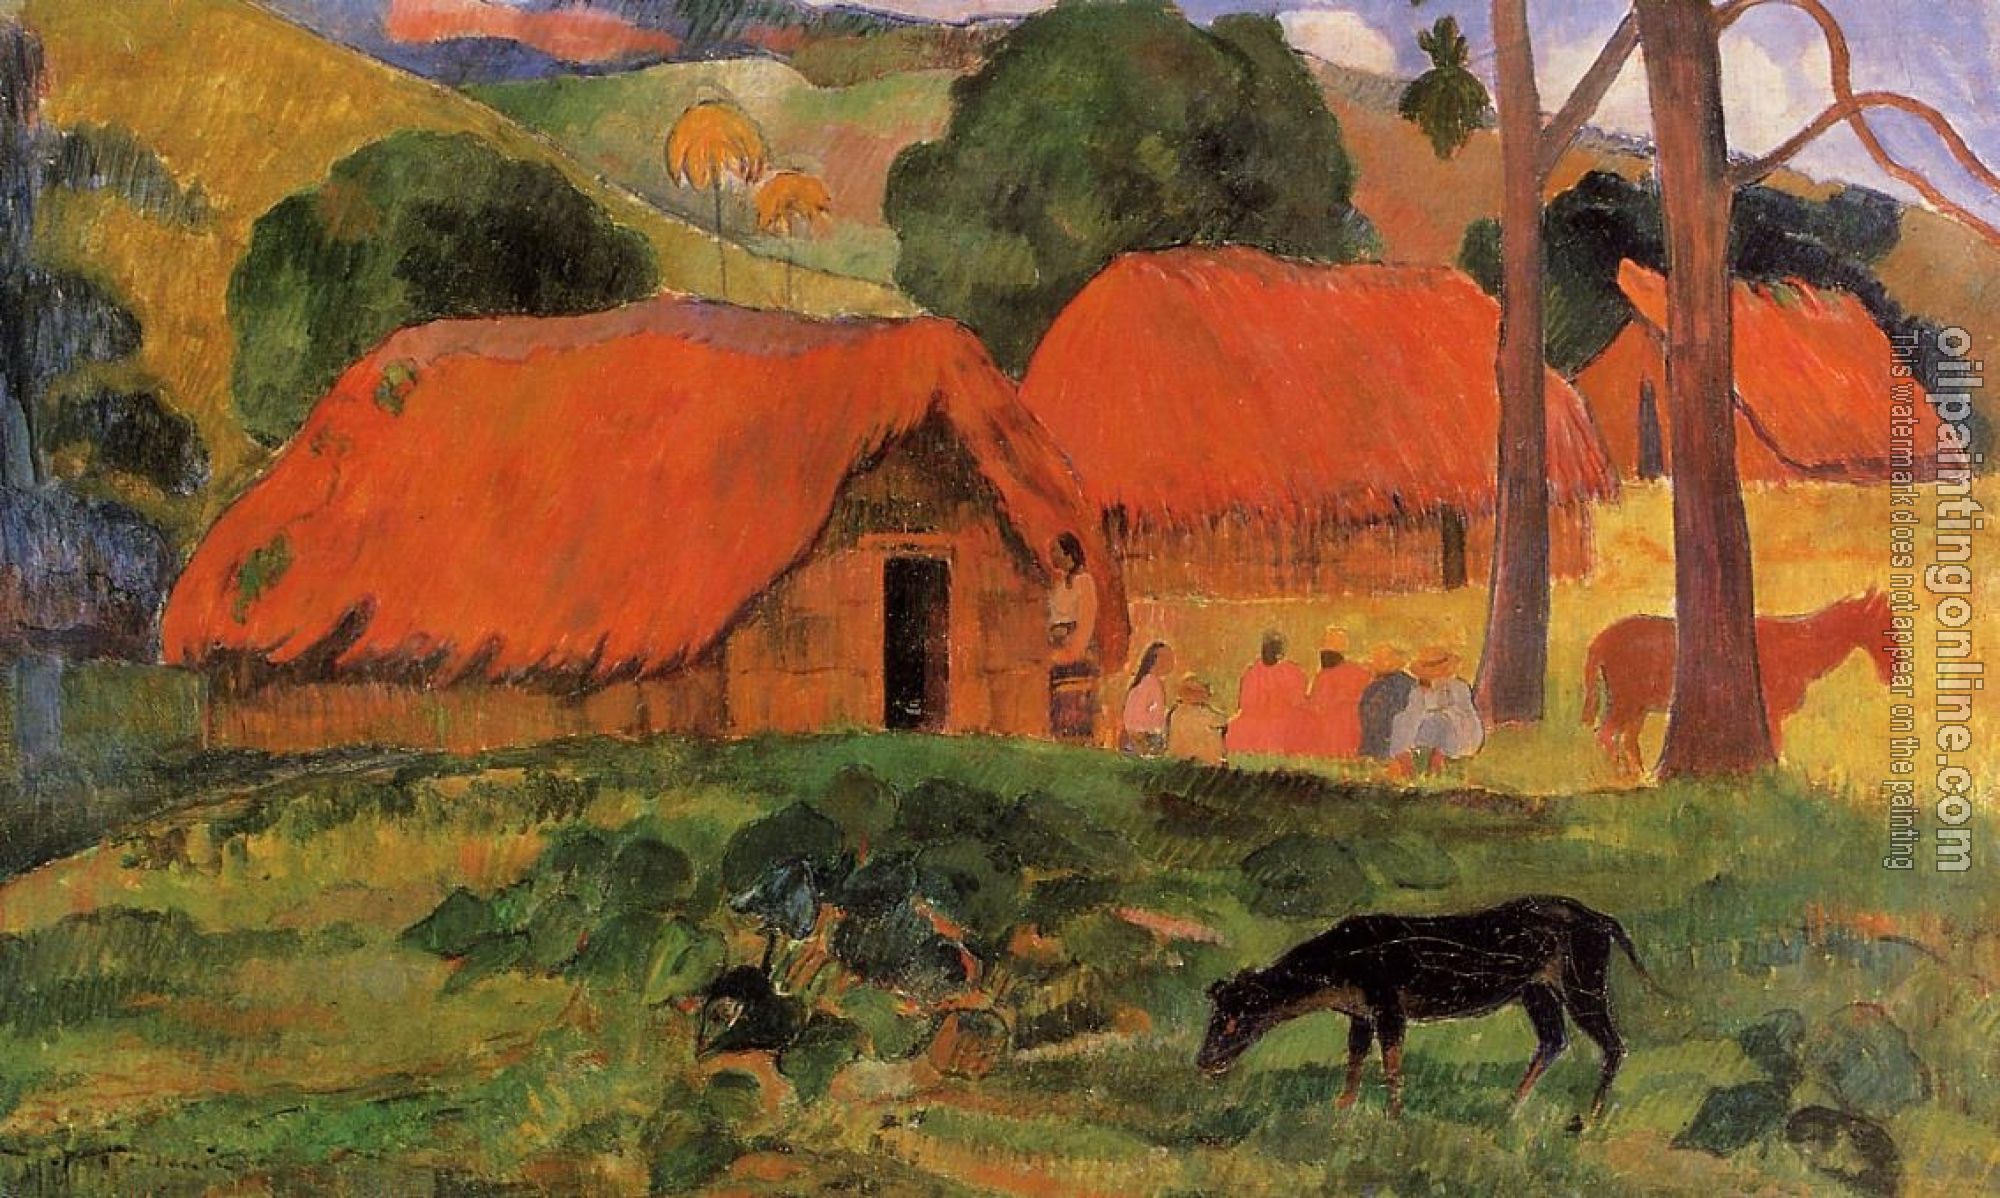 Gauguin, Paul - Three Huts, Tahiti